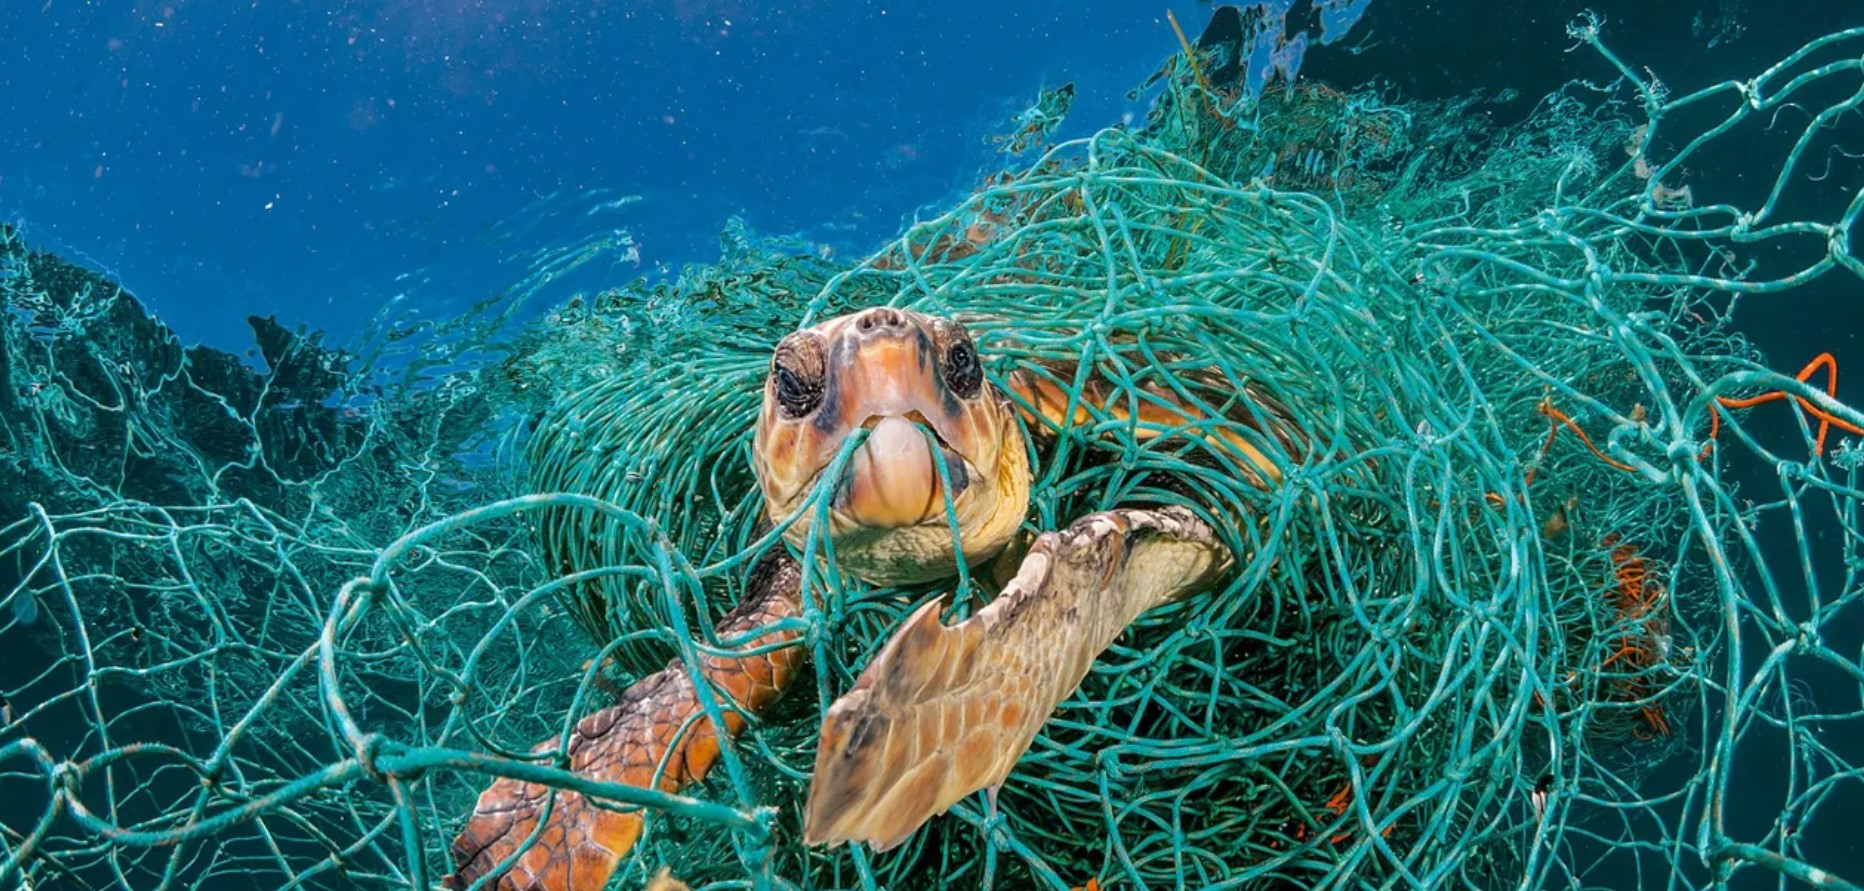 Uma velha rede de náilon prende como numa armadilha a tartaruga-cabeçuda no litoral espanhol, no Mediterrâneo. Foto de Jordi Chias. Reprodução da Web.